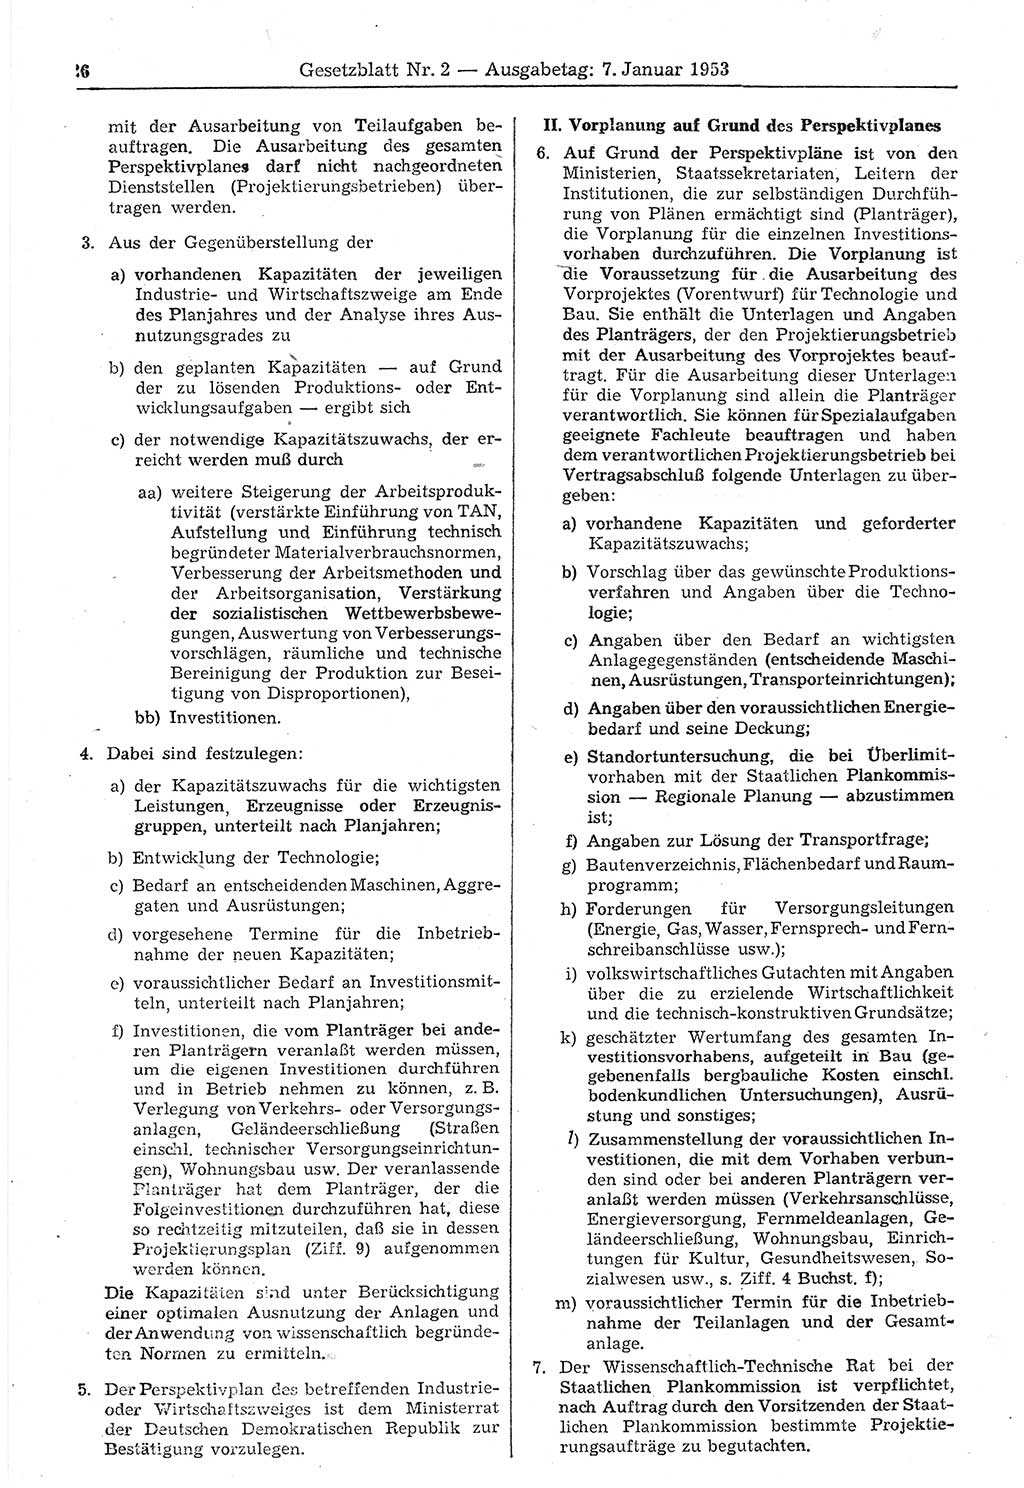 Gesetzblatt (GBl.) der Deutschen Demokratischen Republik (DDR) 1953, Seite 26 (GBl. DDR 1953, S. 26)